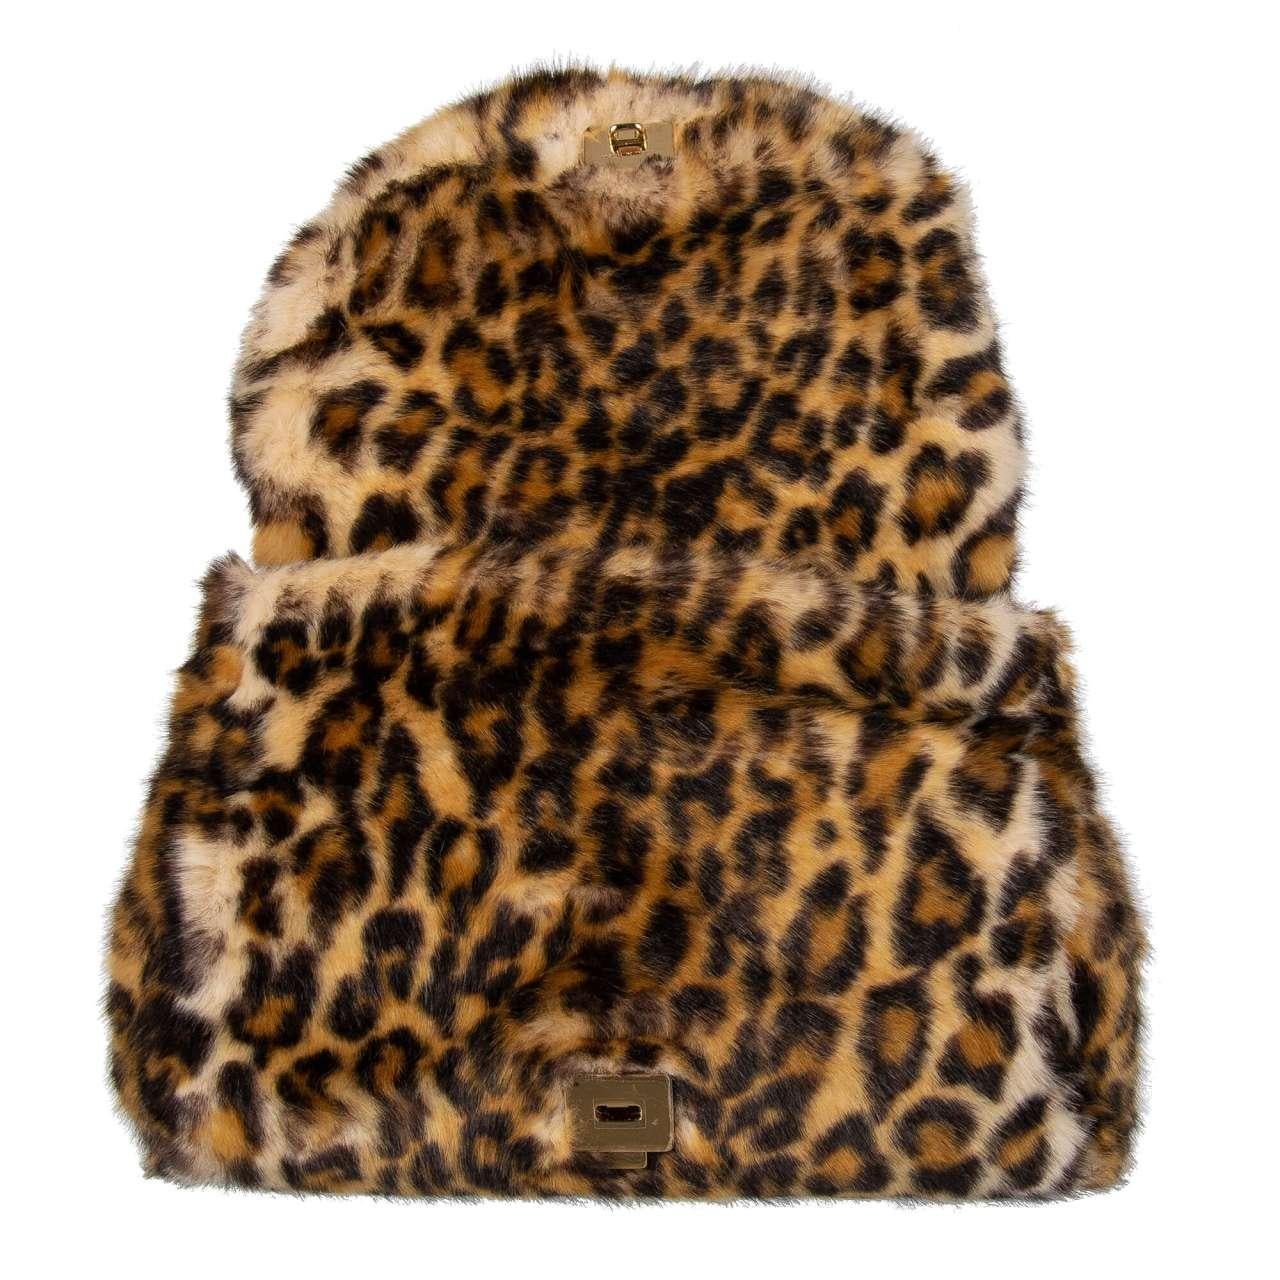 Dolce & Gabbana - Faux Leopard Fur Tote Shoulder Bag SICILY For Sale 1